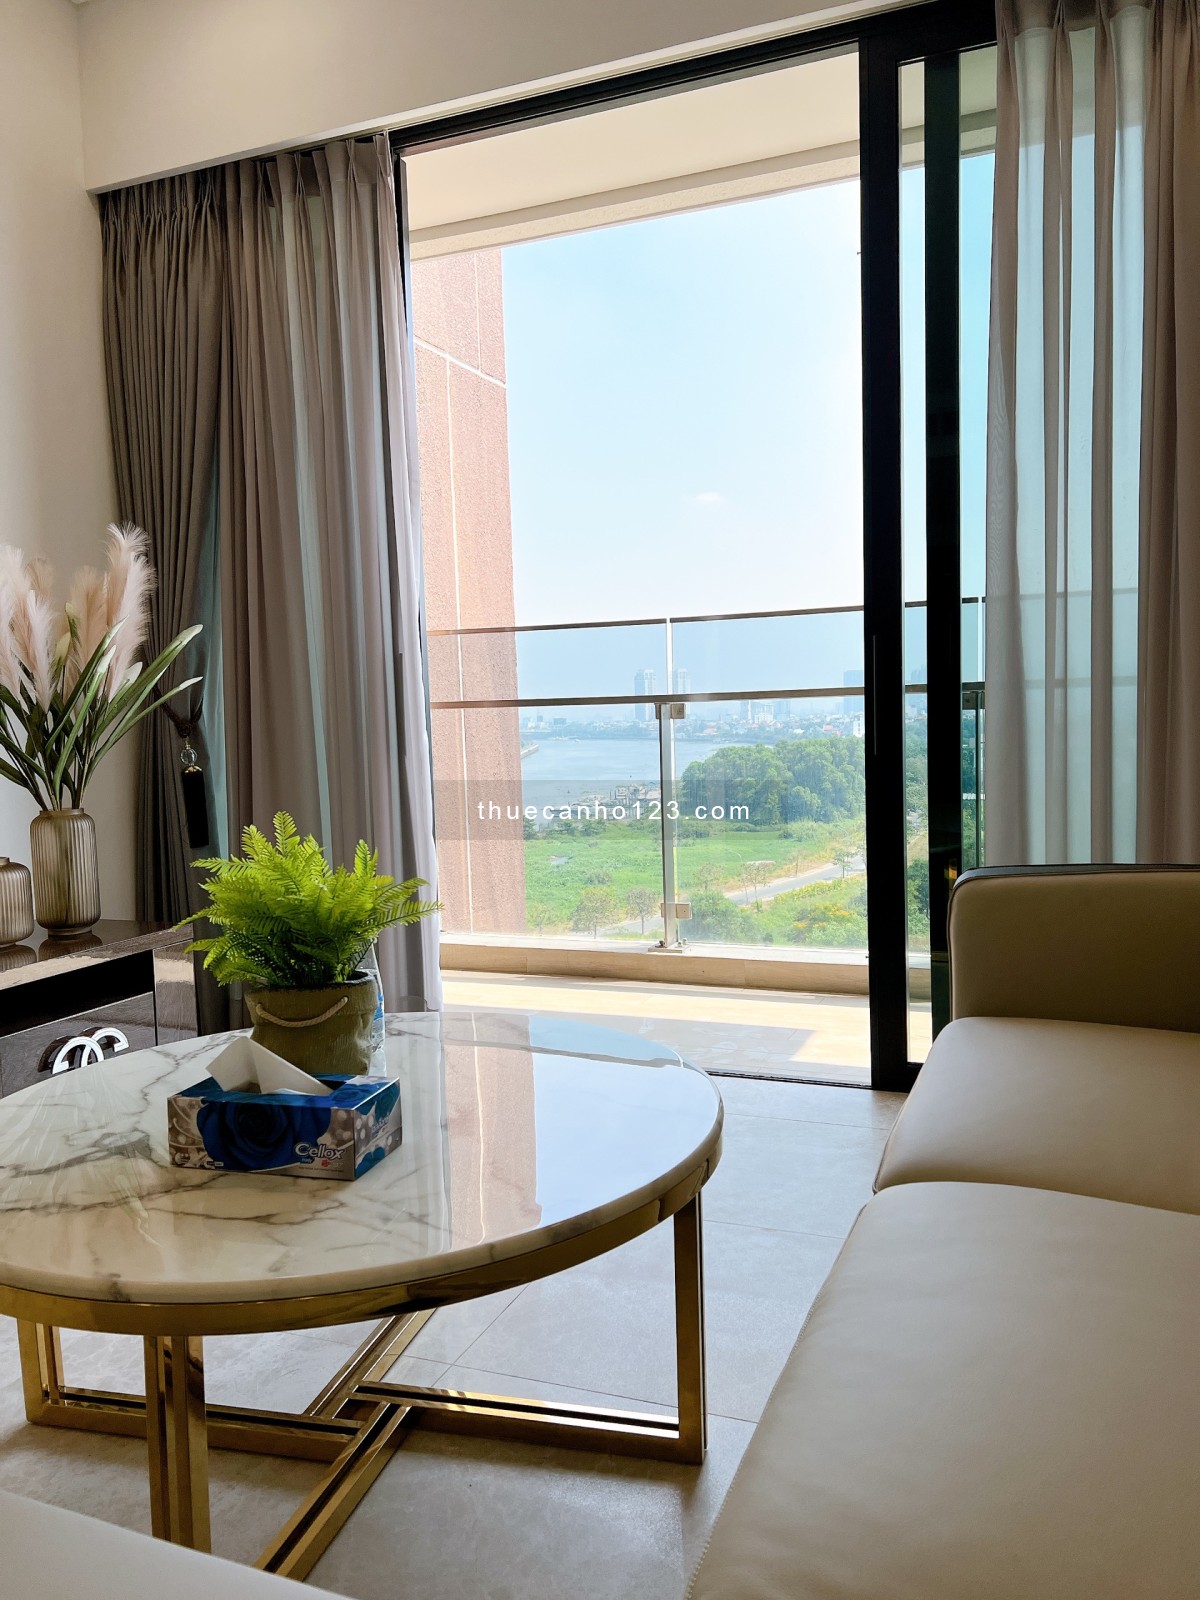 Nhà đẹp, hơi thở sang trọng, quý phái, không gian ấm áp, view LandMark 81 và sông Sài Gòn